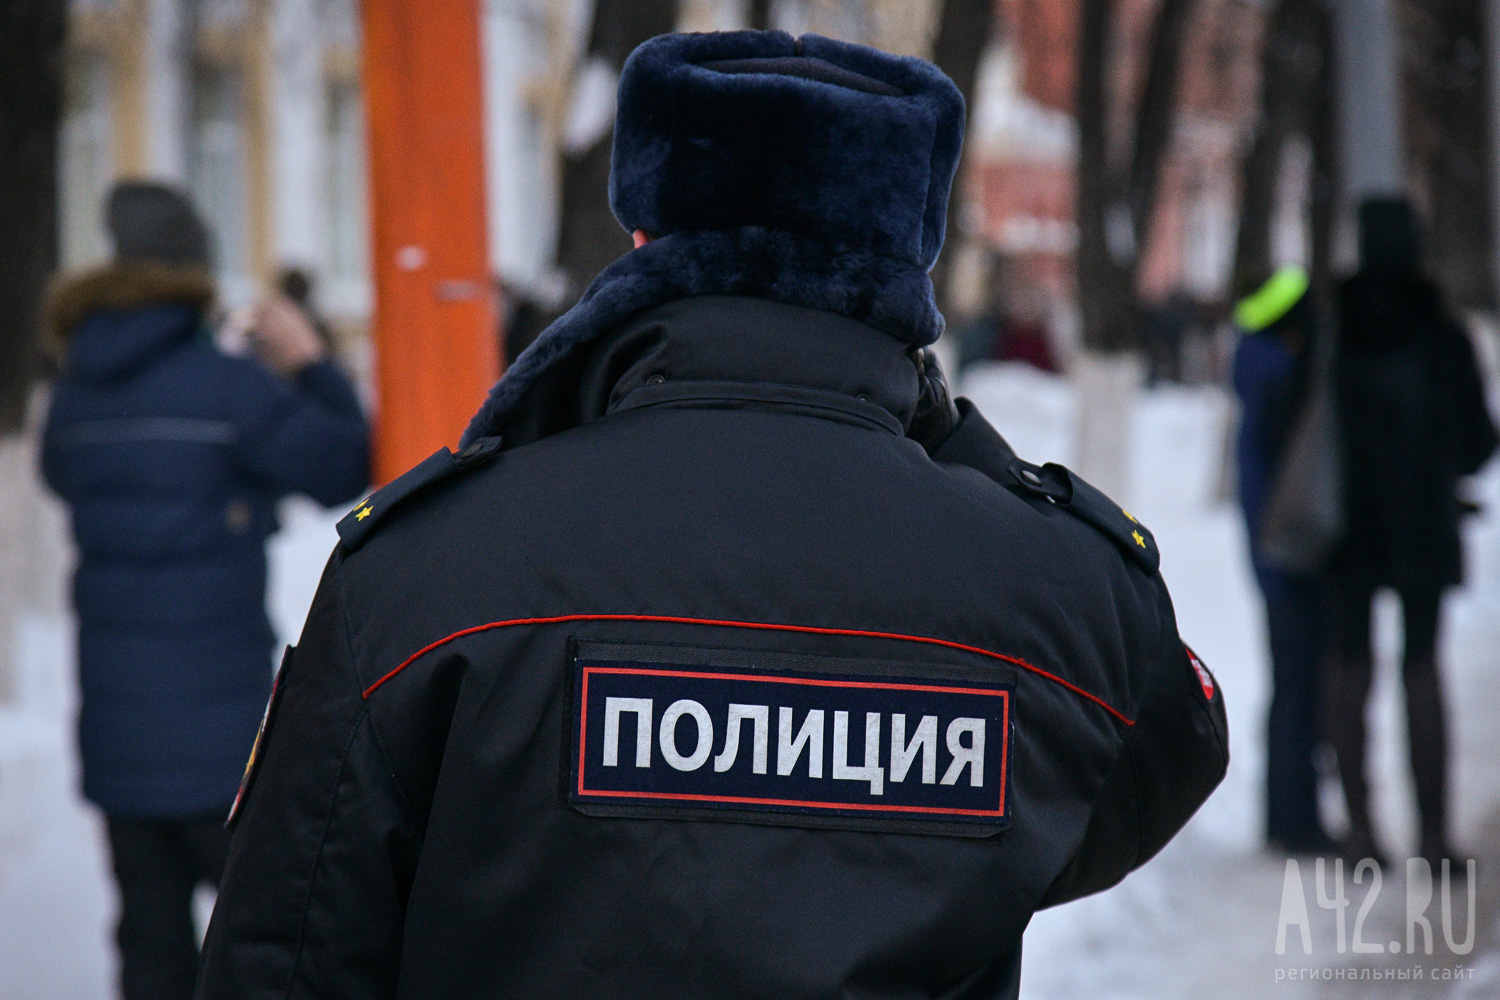 «Увезли нетрезвую женщину домой»: в полиции опровергли информацию об изнасиловании девушки в одном из городов Кузбасса